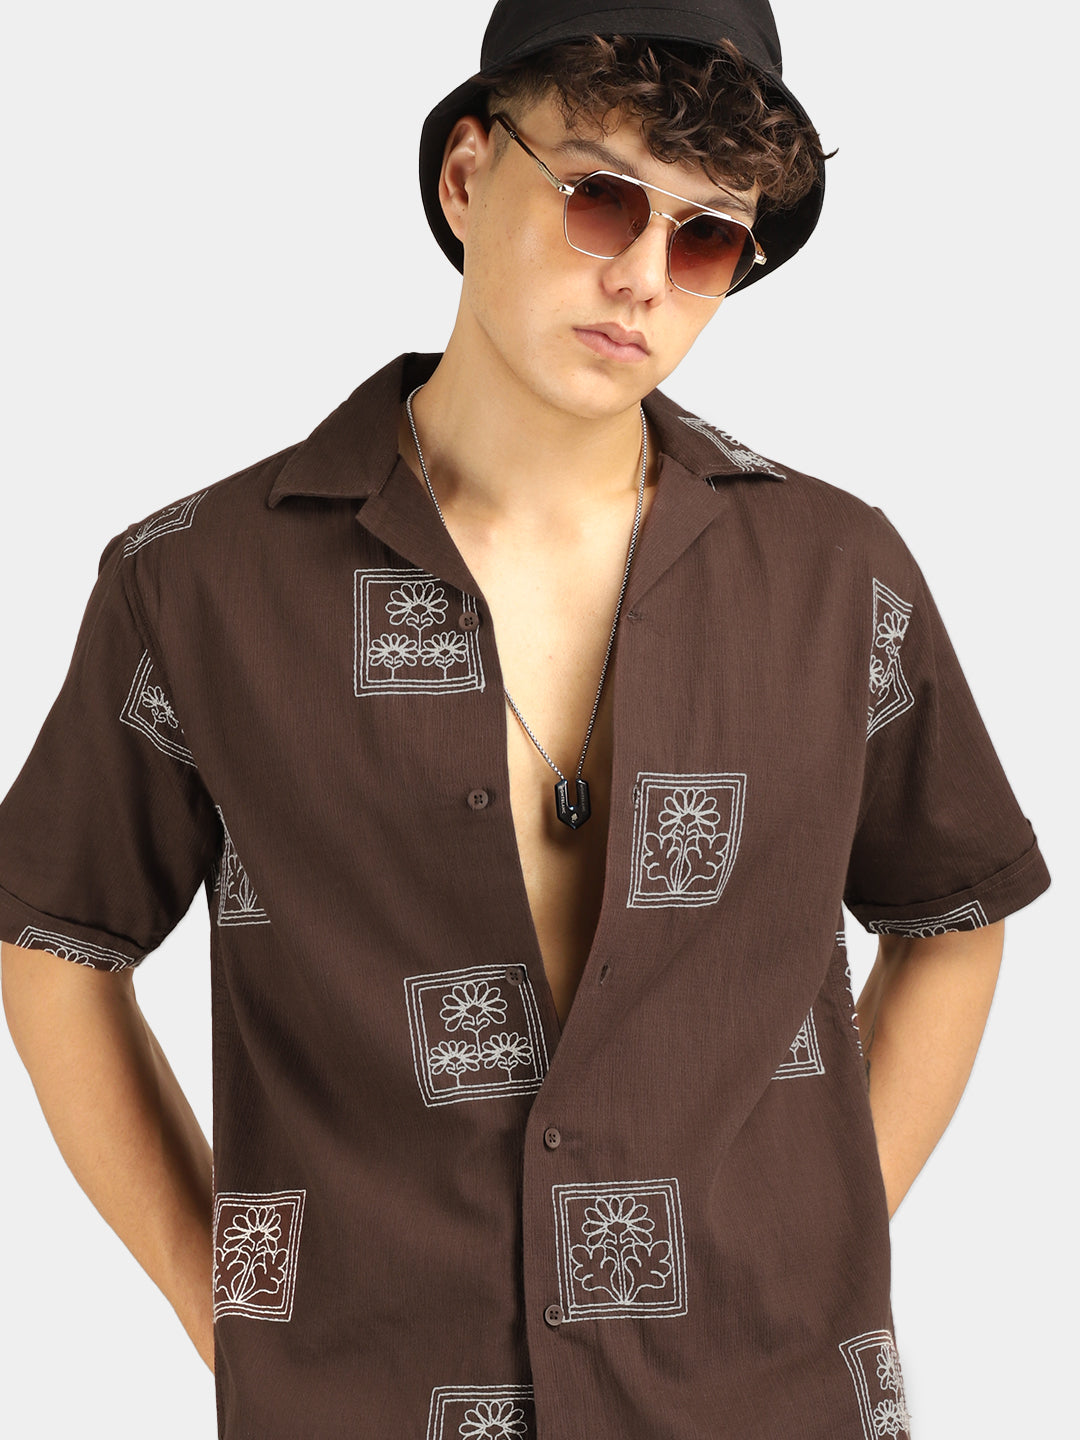 Contrast Brown Half Sleeves Shirt